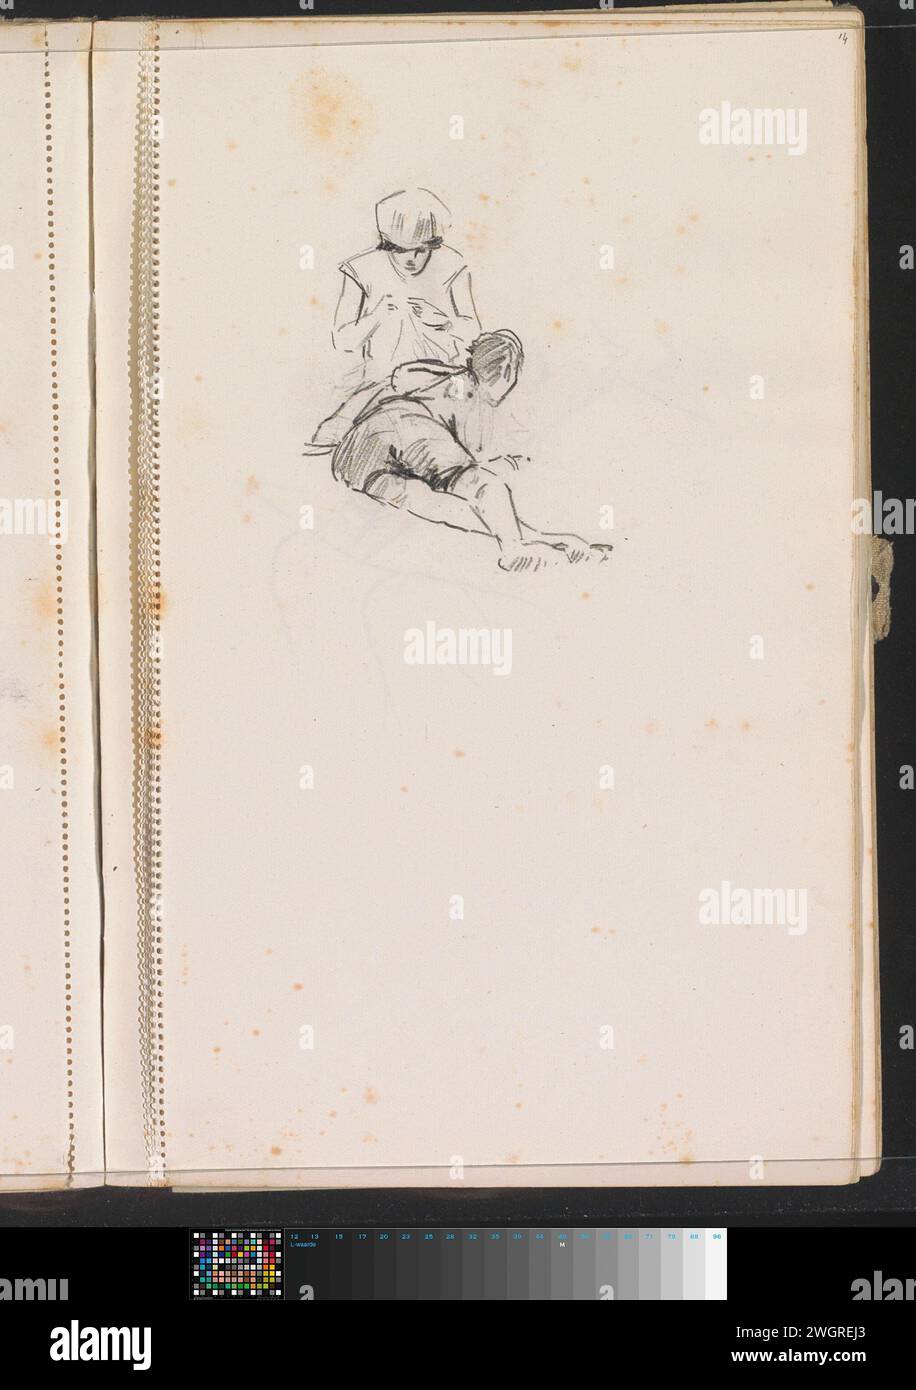 Ragazzo sdraiato accanto ad una ragazza di artigianato, c. 1928 - c. 1930 pagina 14 da un quaderno con 51 fogli. carta. figura sdraiata con gesso. Figura seduta - AA - figura umana femminile Foto Stock